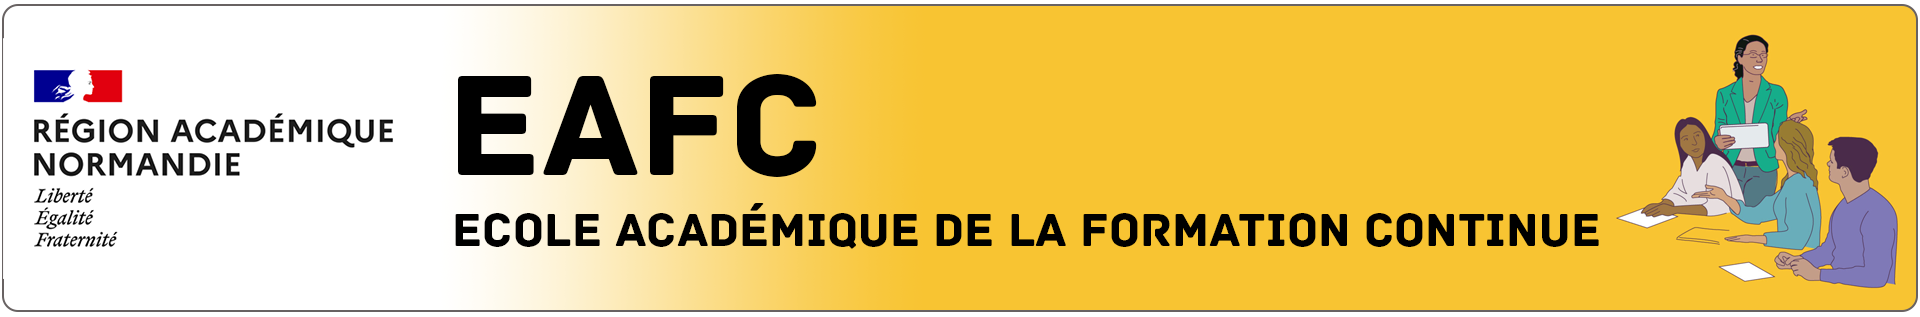 Bannière EAFC Normandie